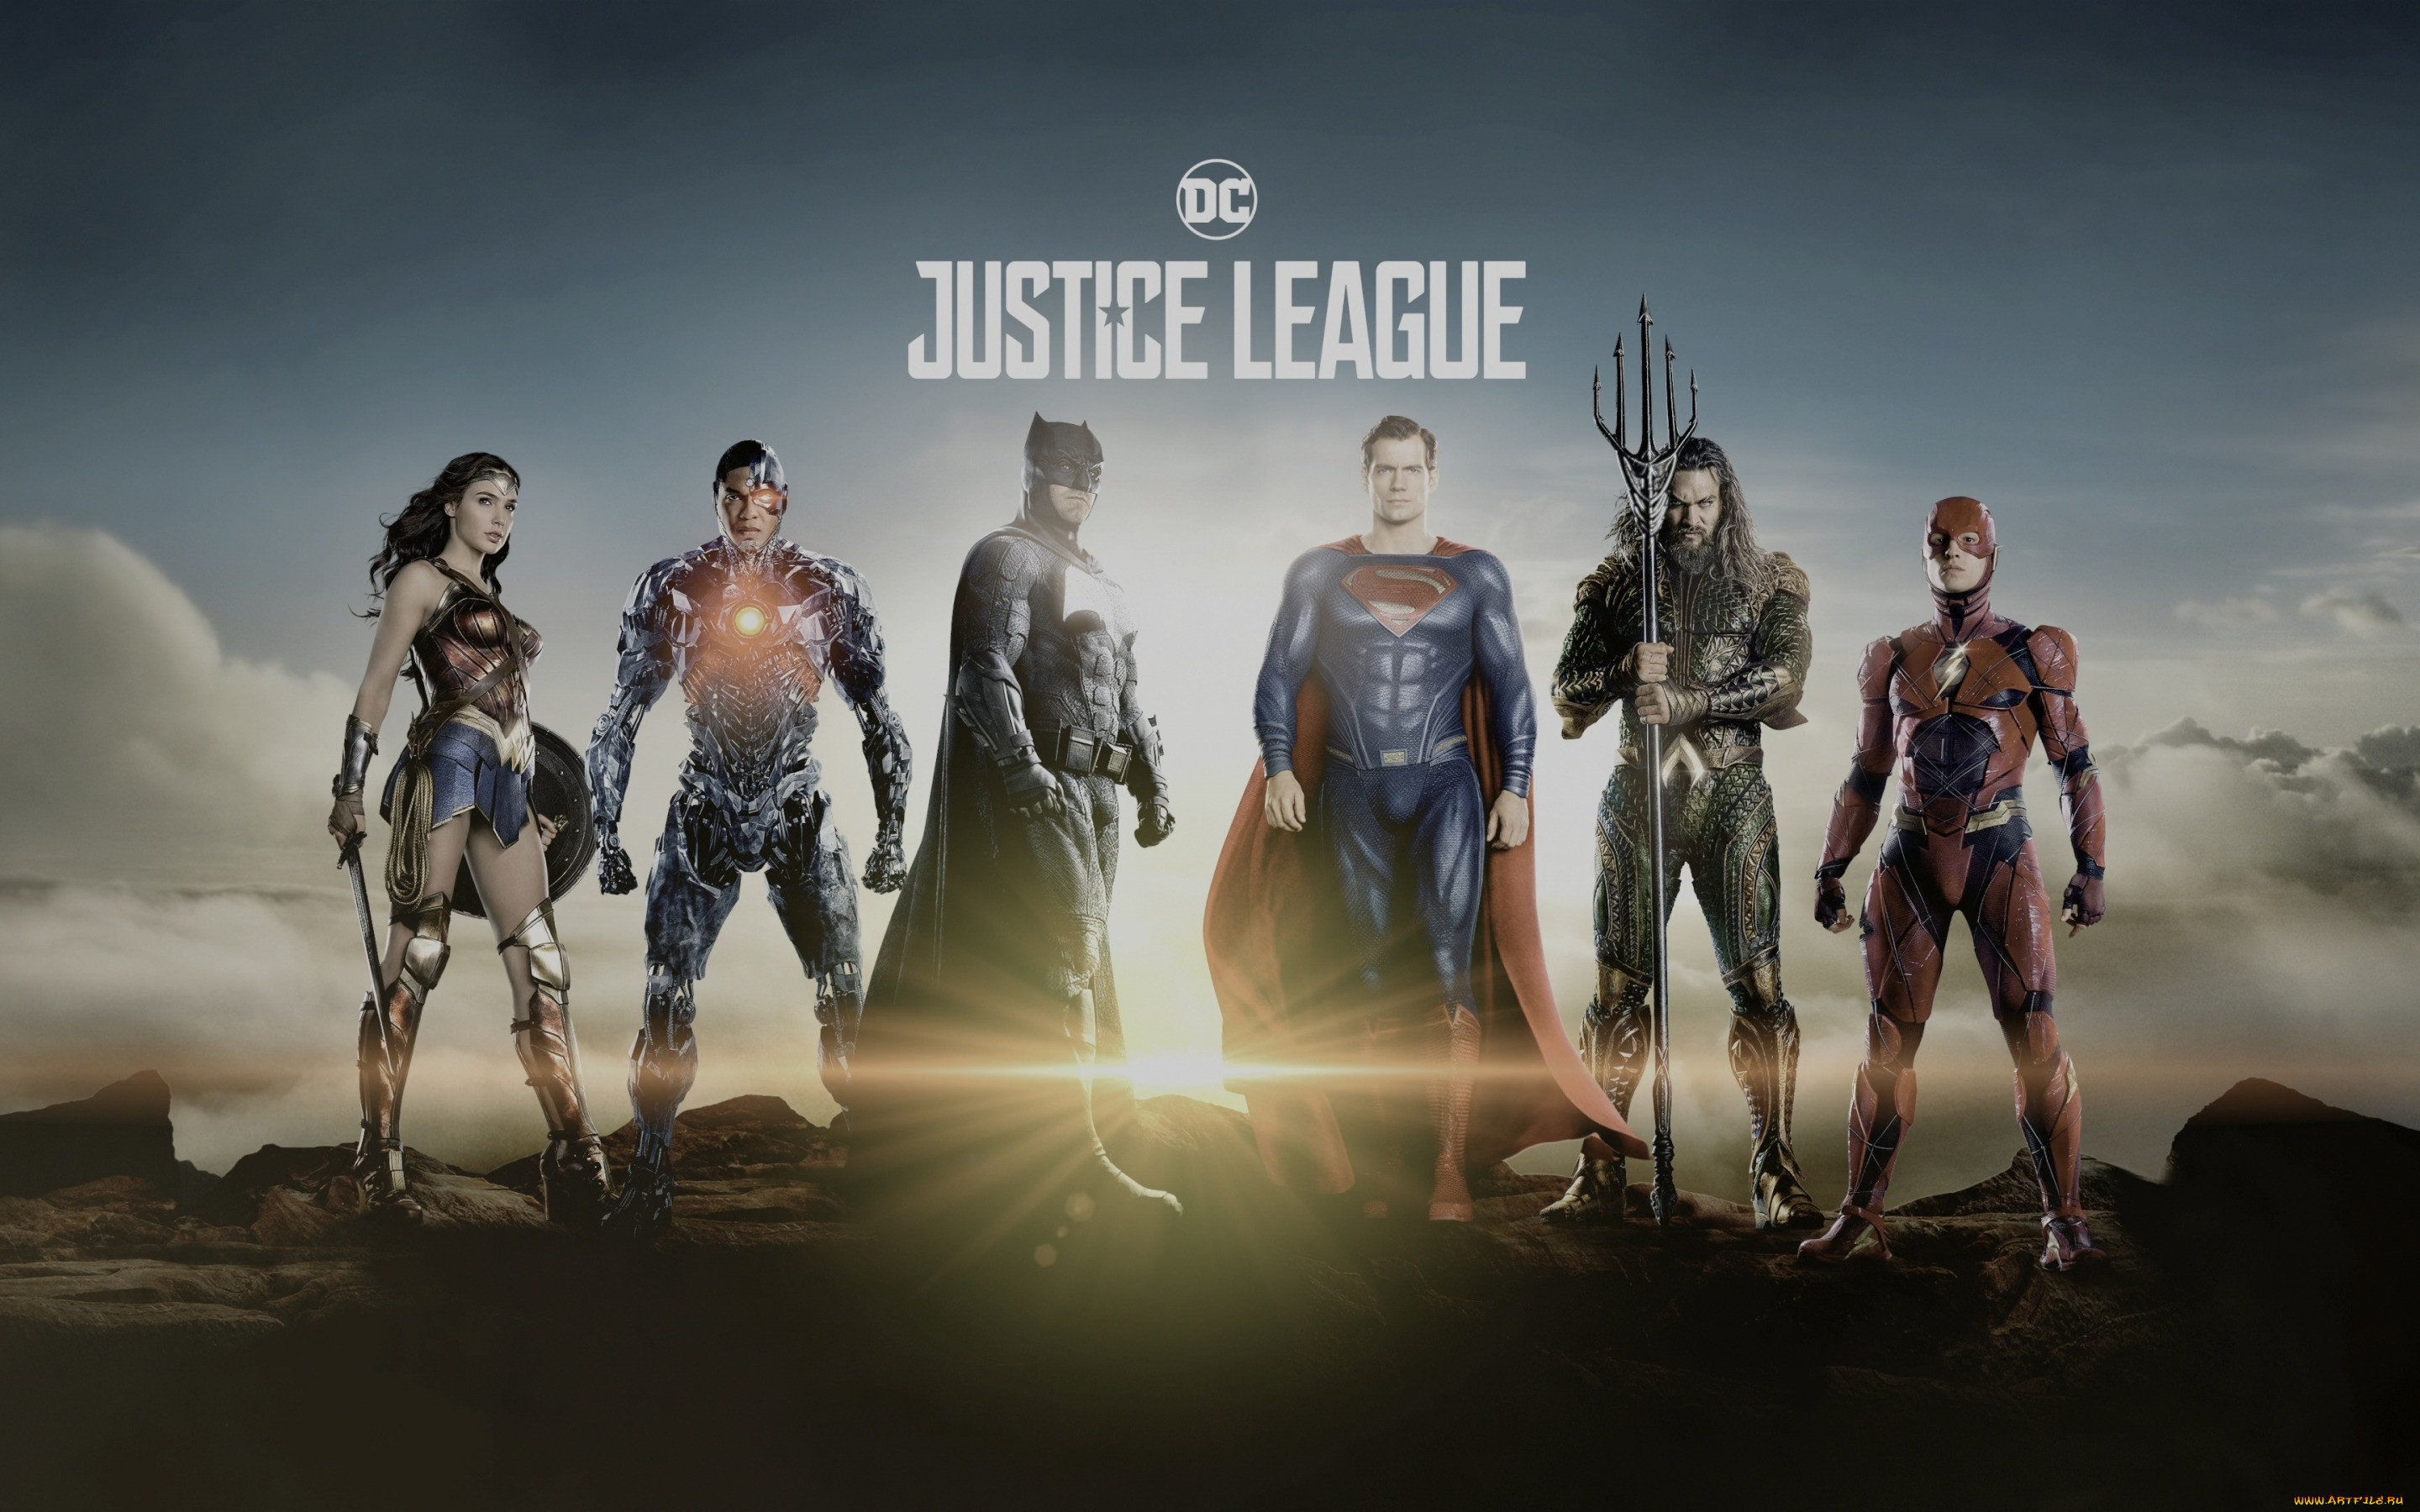  , justice league, justice, league